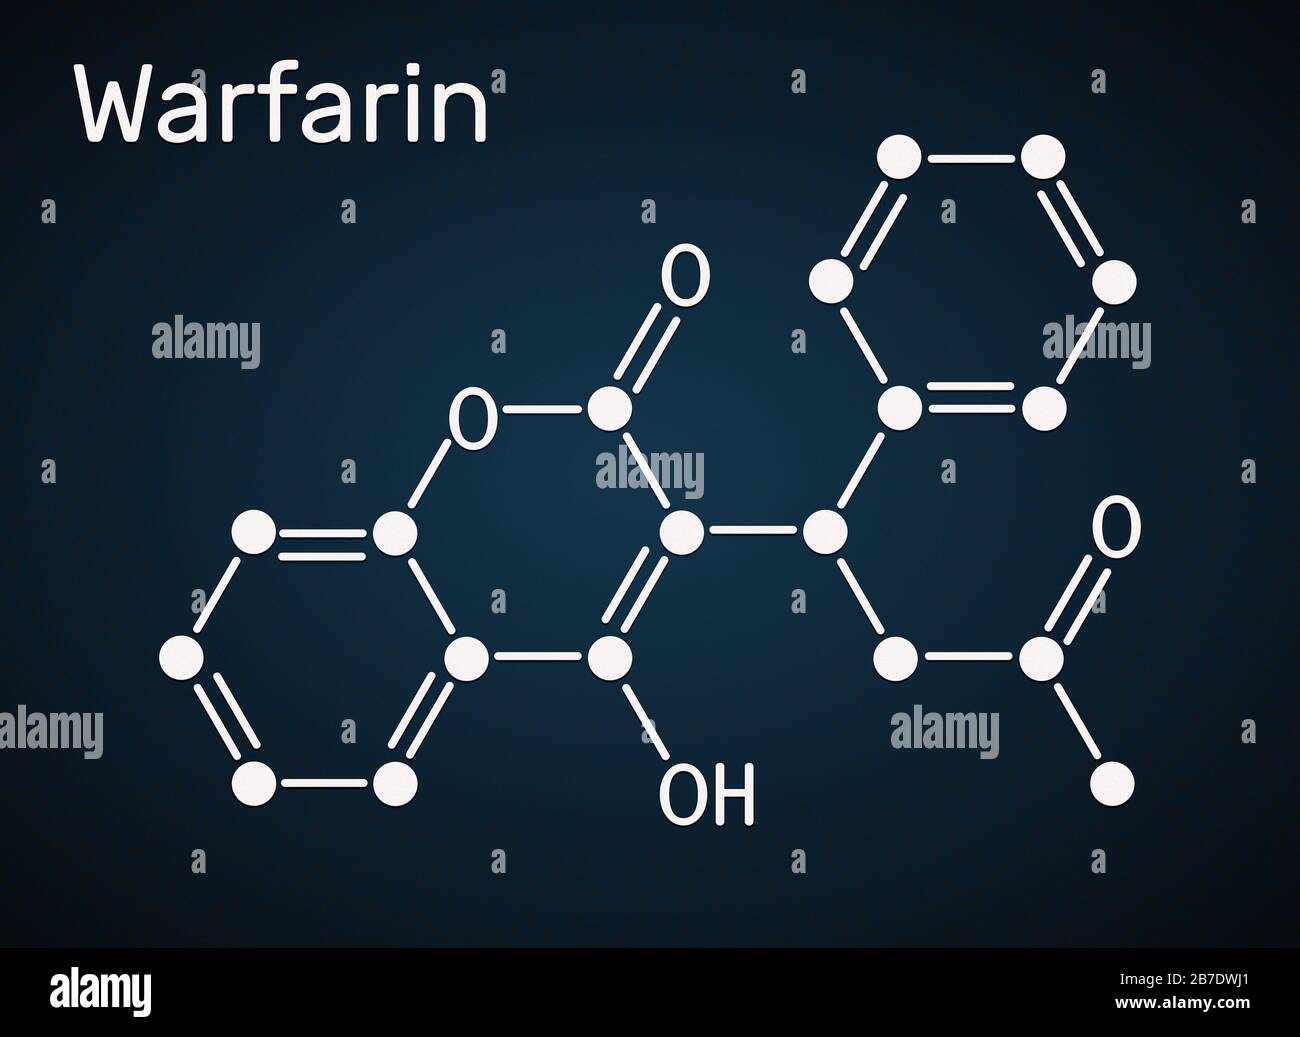 Warfarin uses